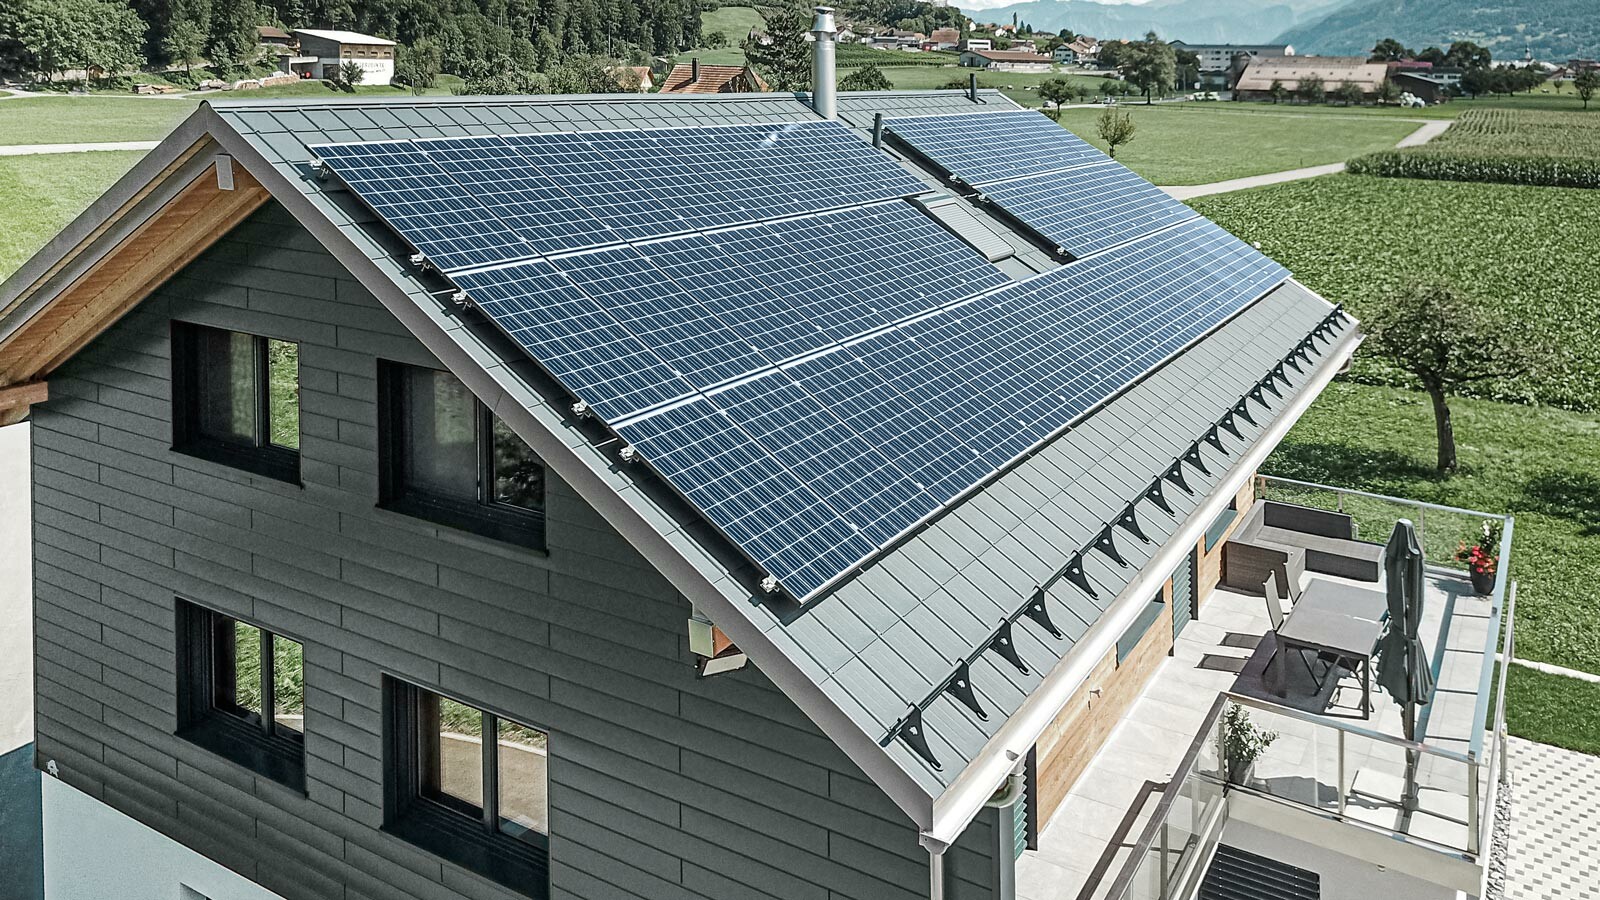 PREFA Dachplatte in der Farbe anthrazit mit einer montierten Photovoltaik-Anlage als Aufdach-Lösung.